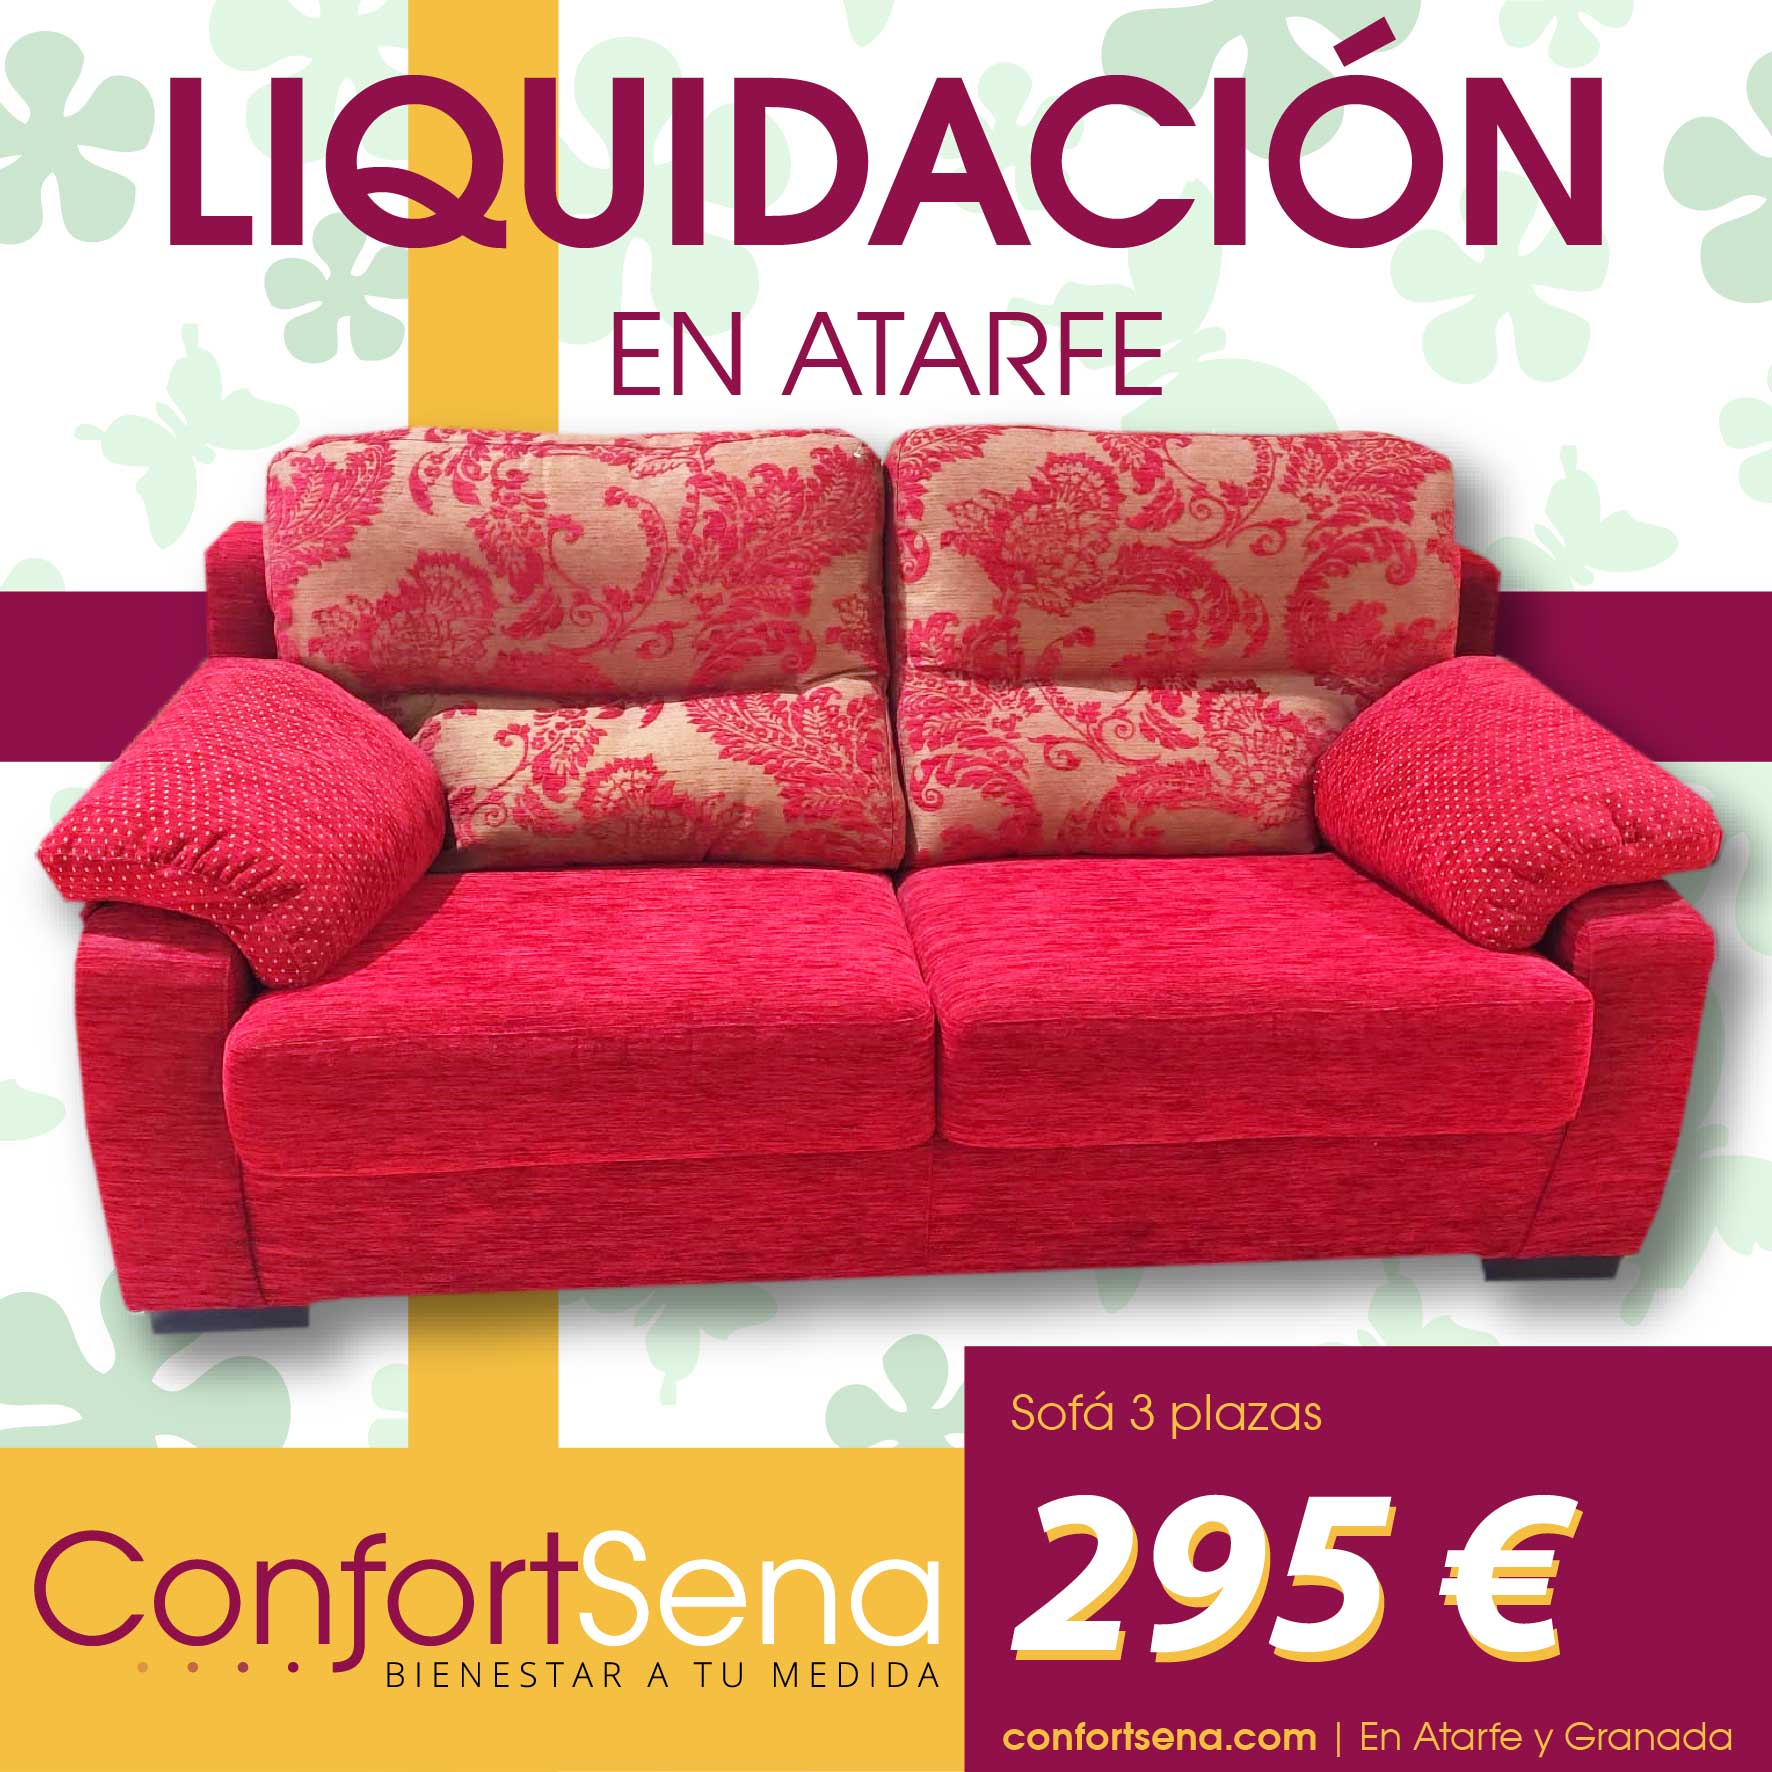 confortsena-ofertas-sofas-de-liquidación-en-atarfe-4